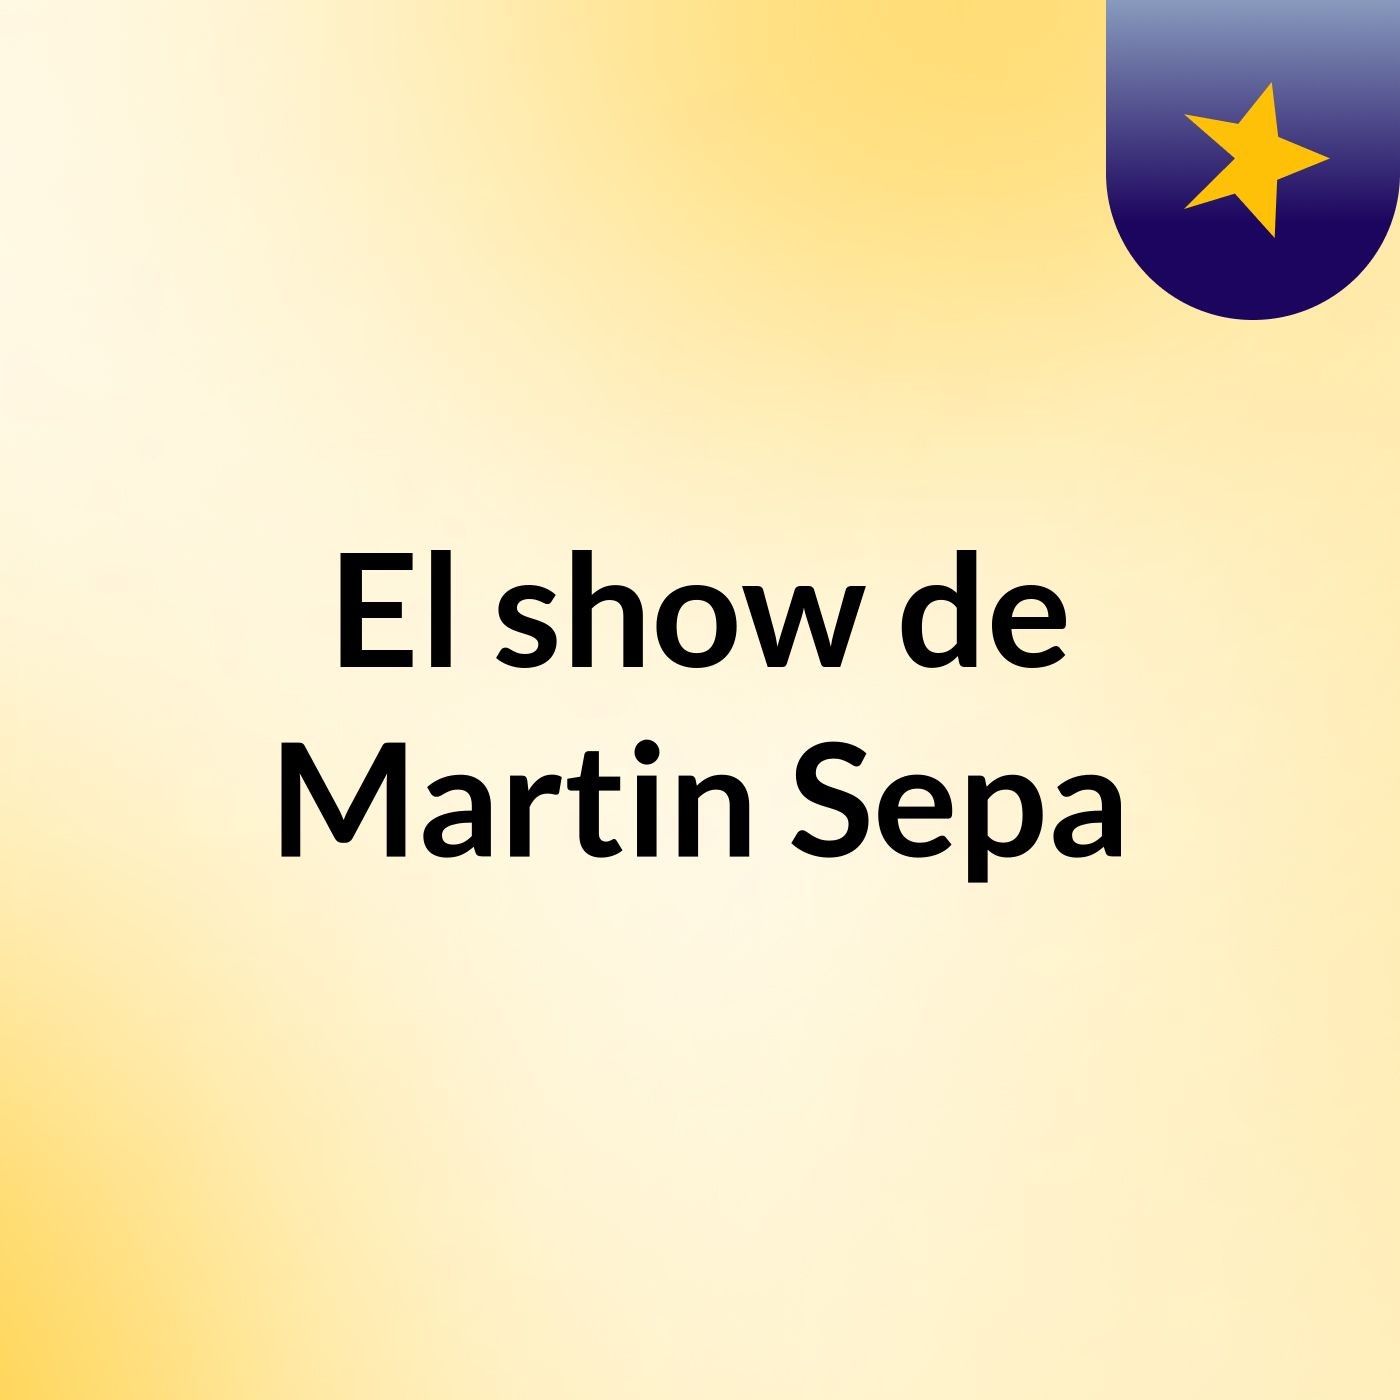 El show de Martin Sepa